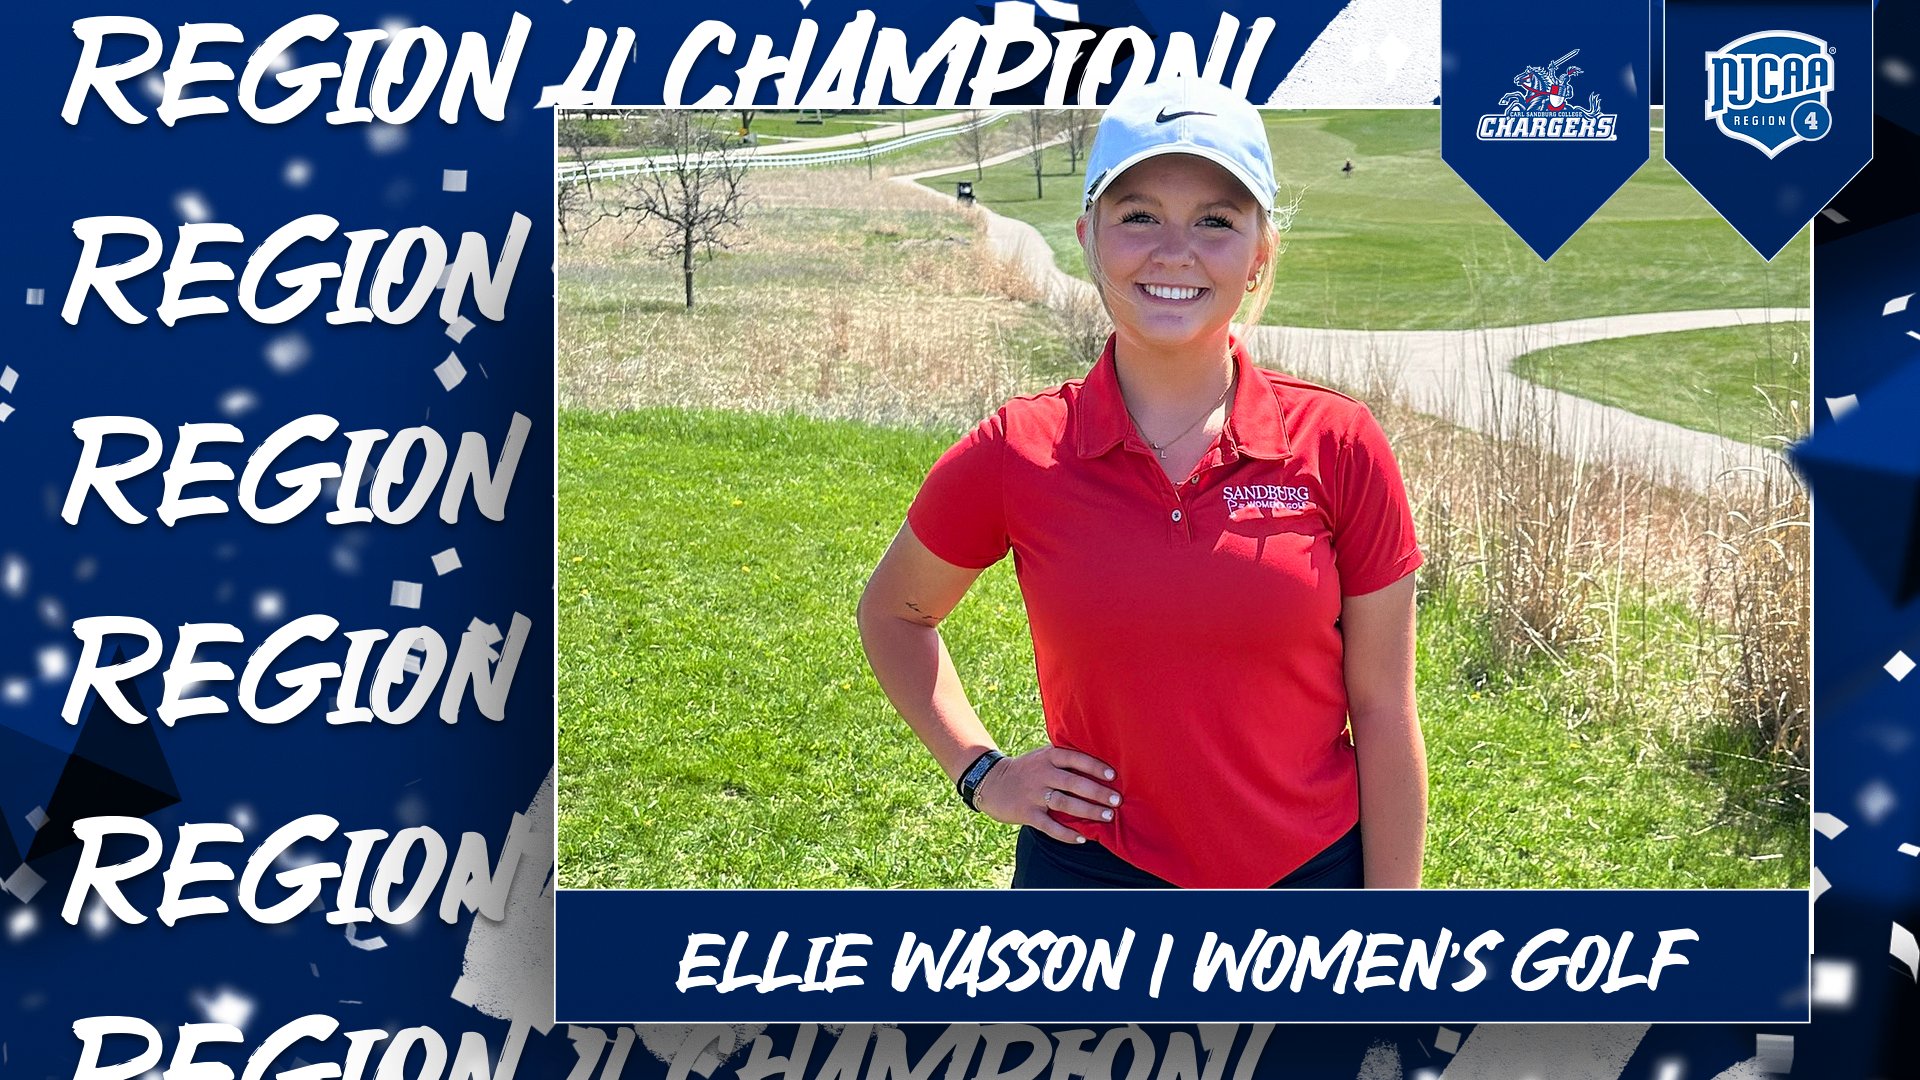 Wasson wins Region 4 women’s golf title behind final-round 82